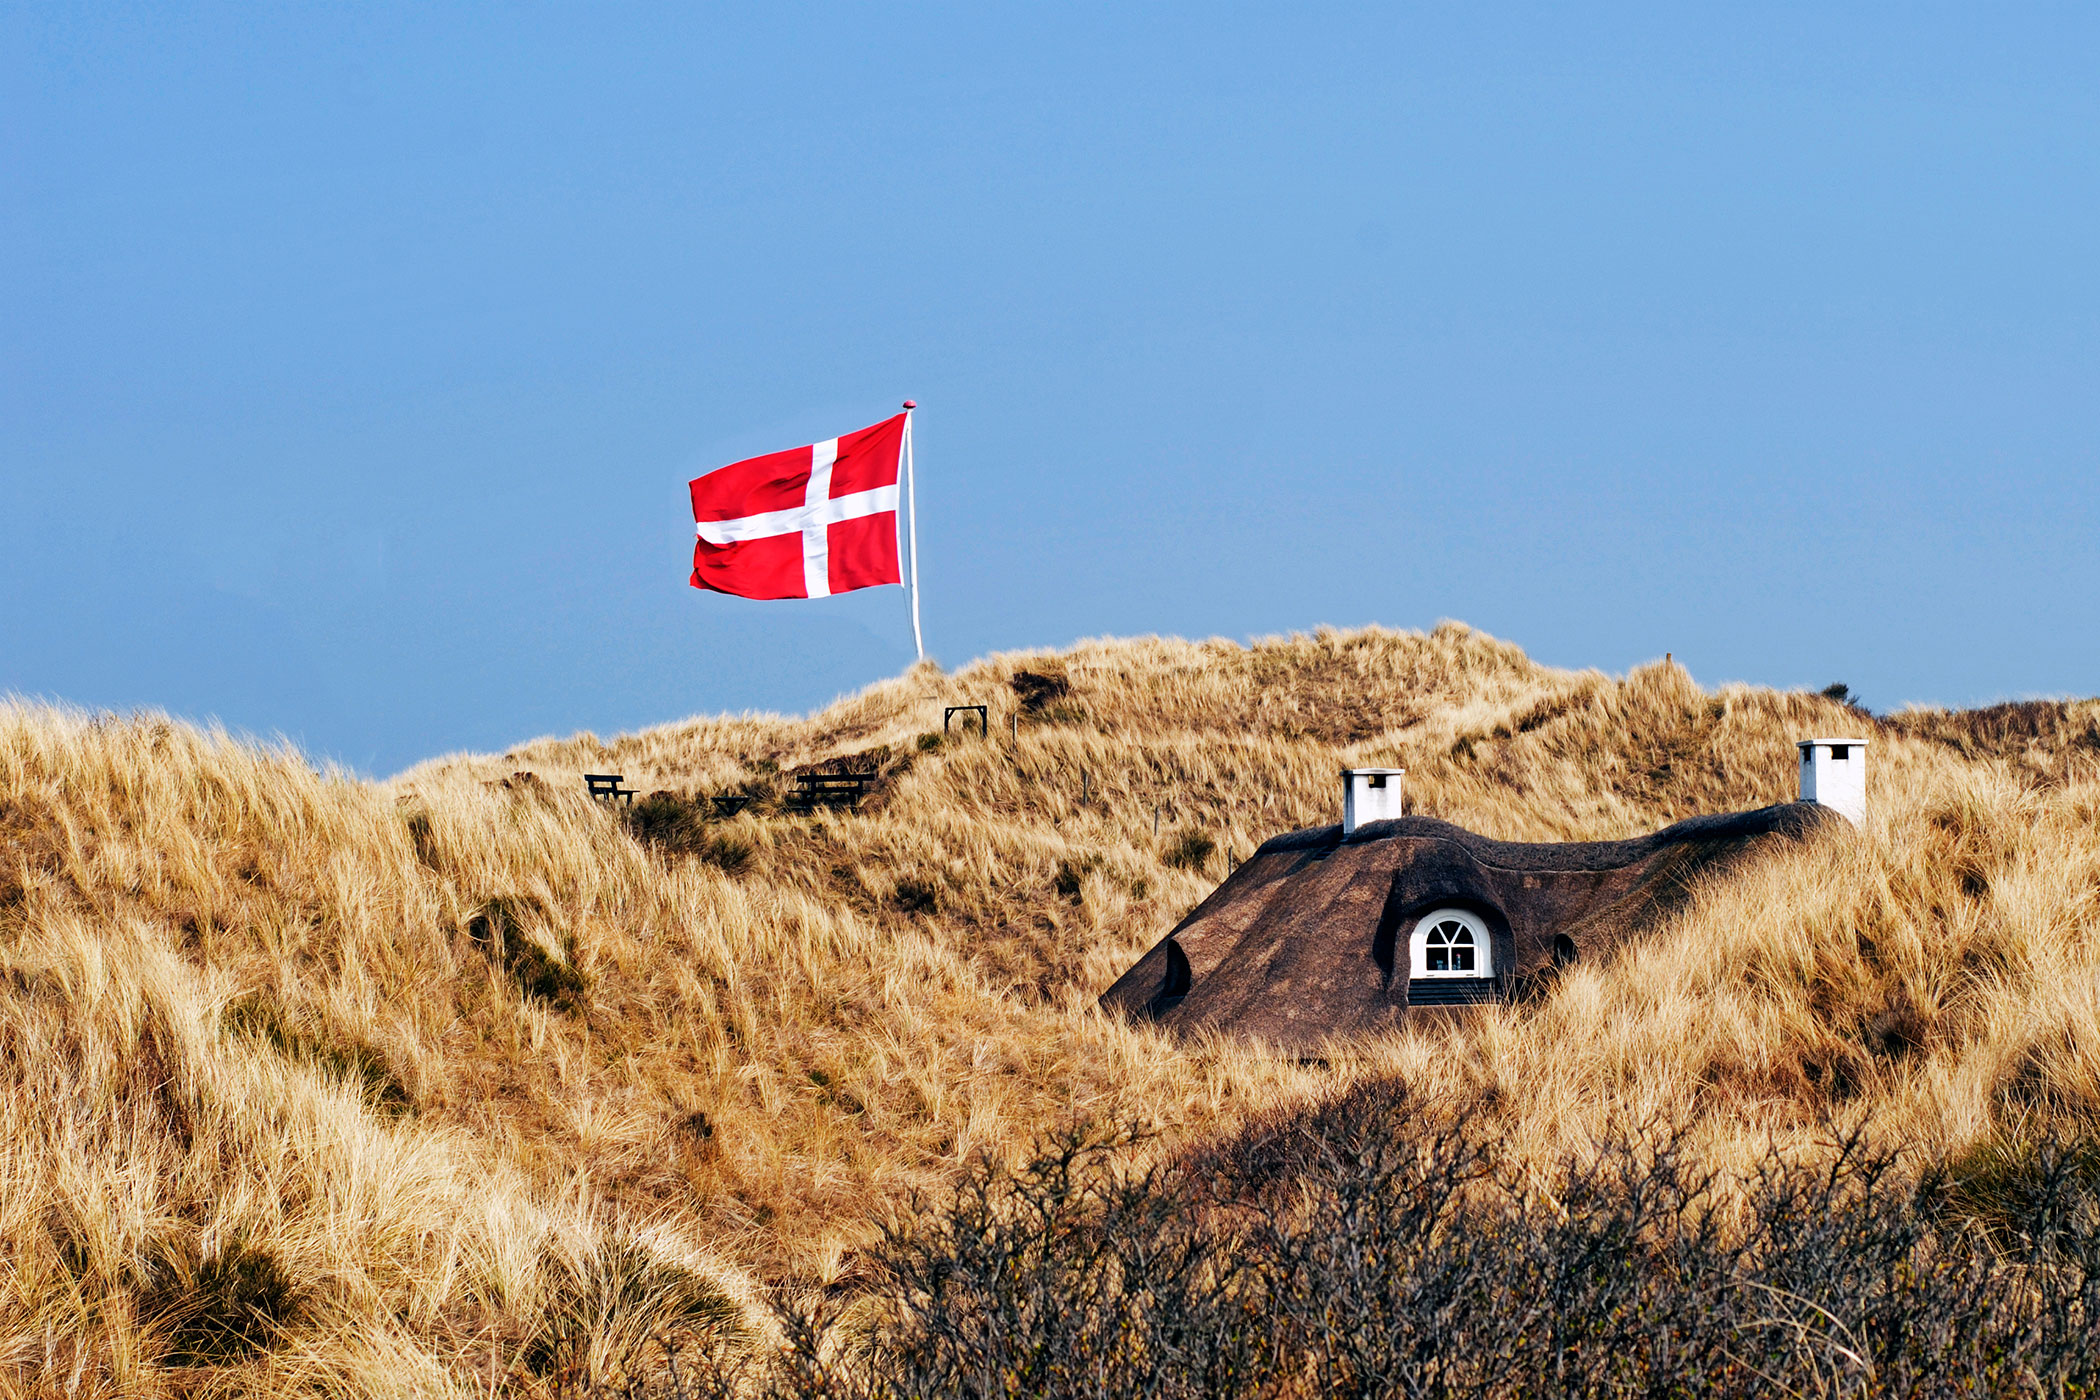 Как получить гражданство Дании